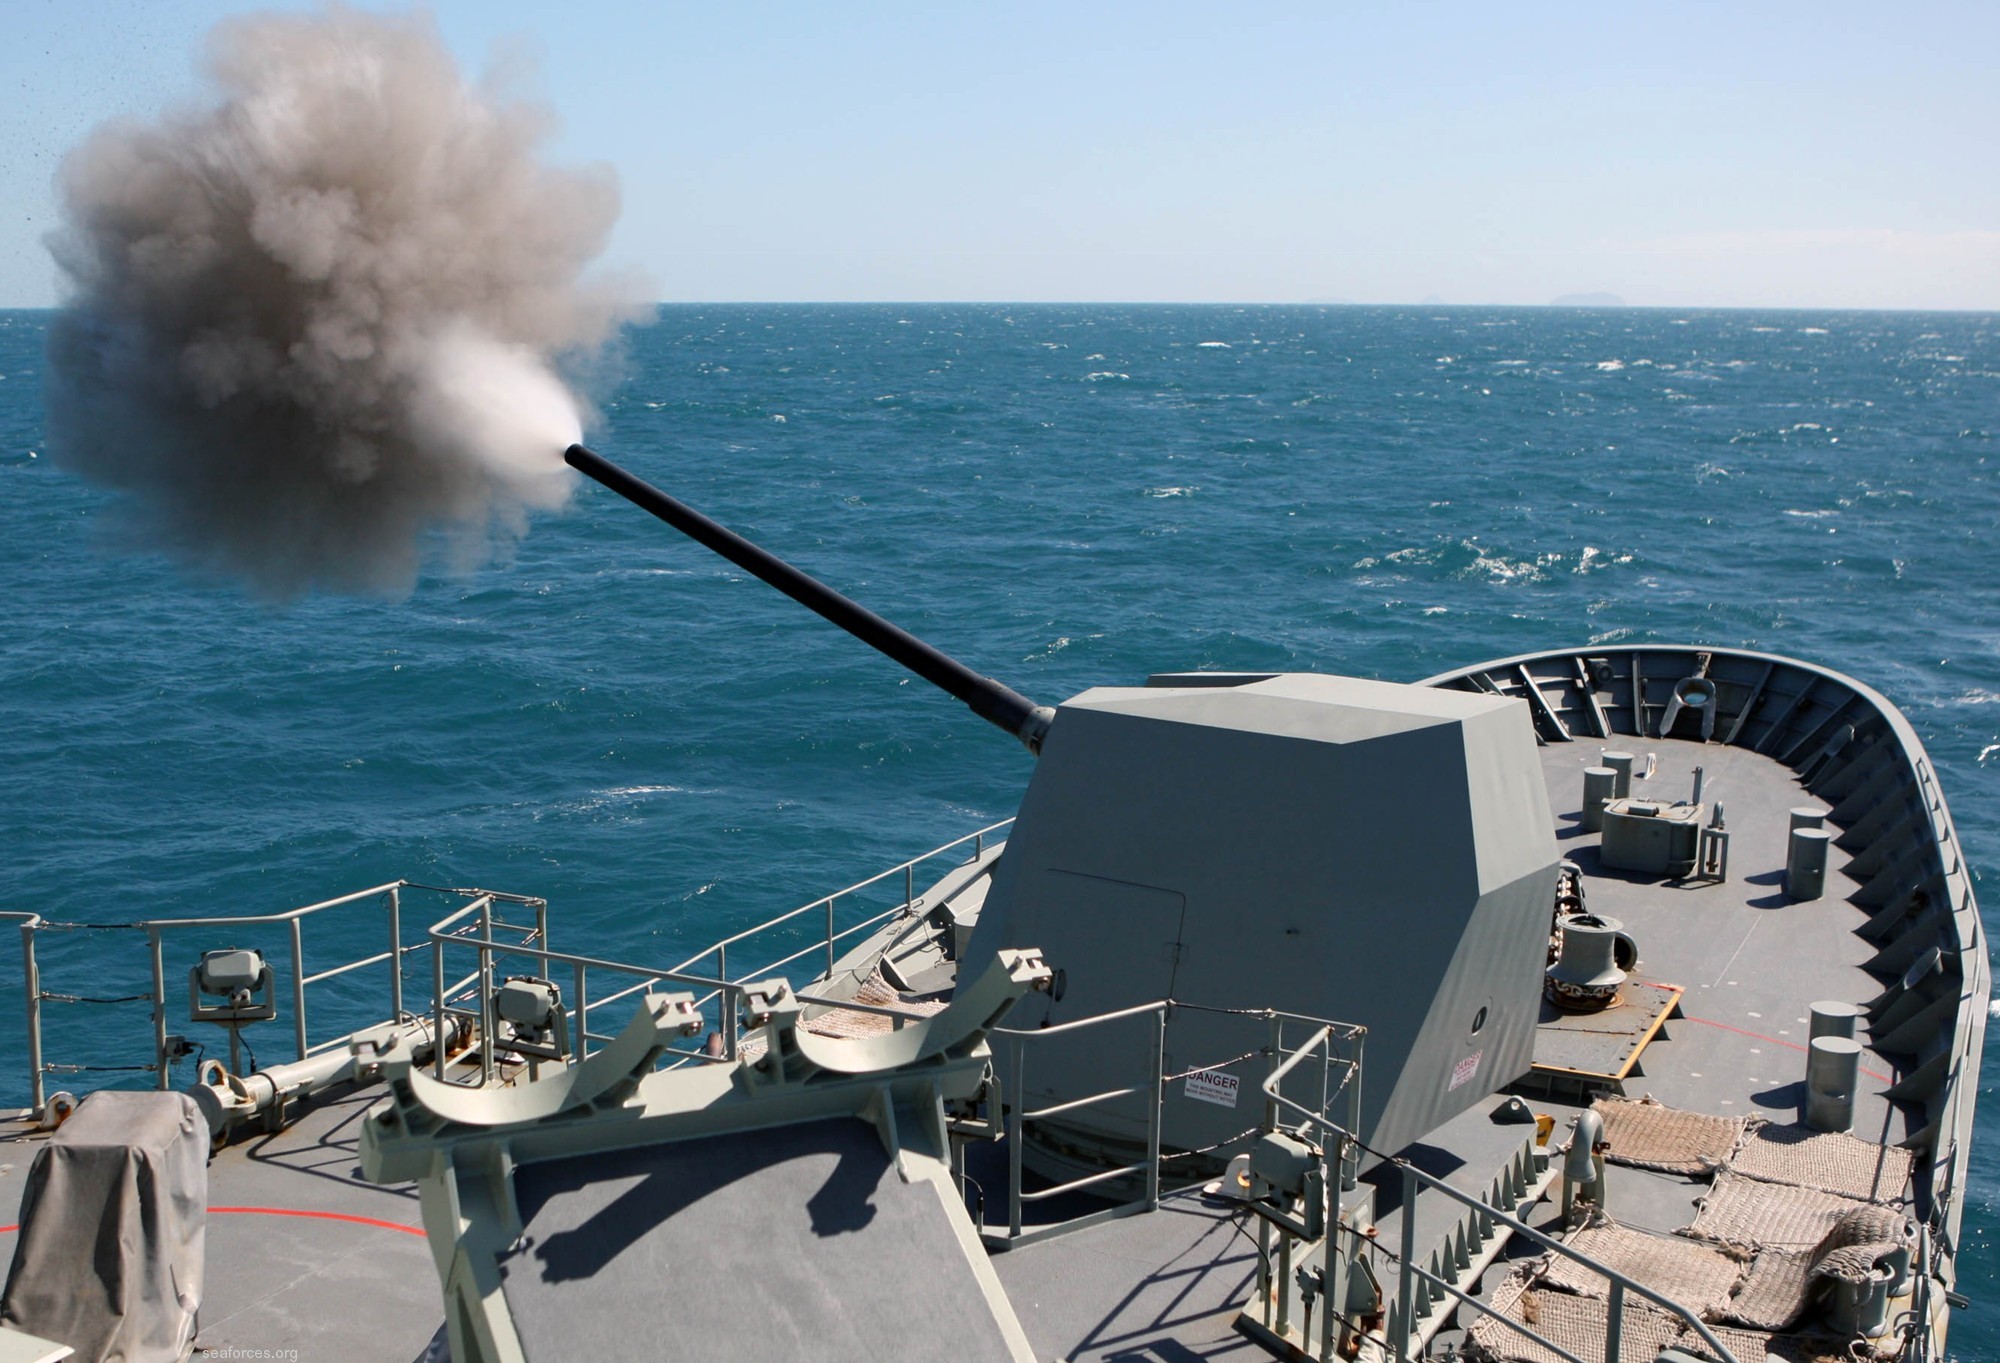 ffh-155 hms ballarat anzac class frigate royal australian navy 2011 37 mk-45 5" 54 caliber gun fire